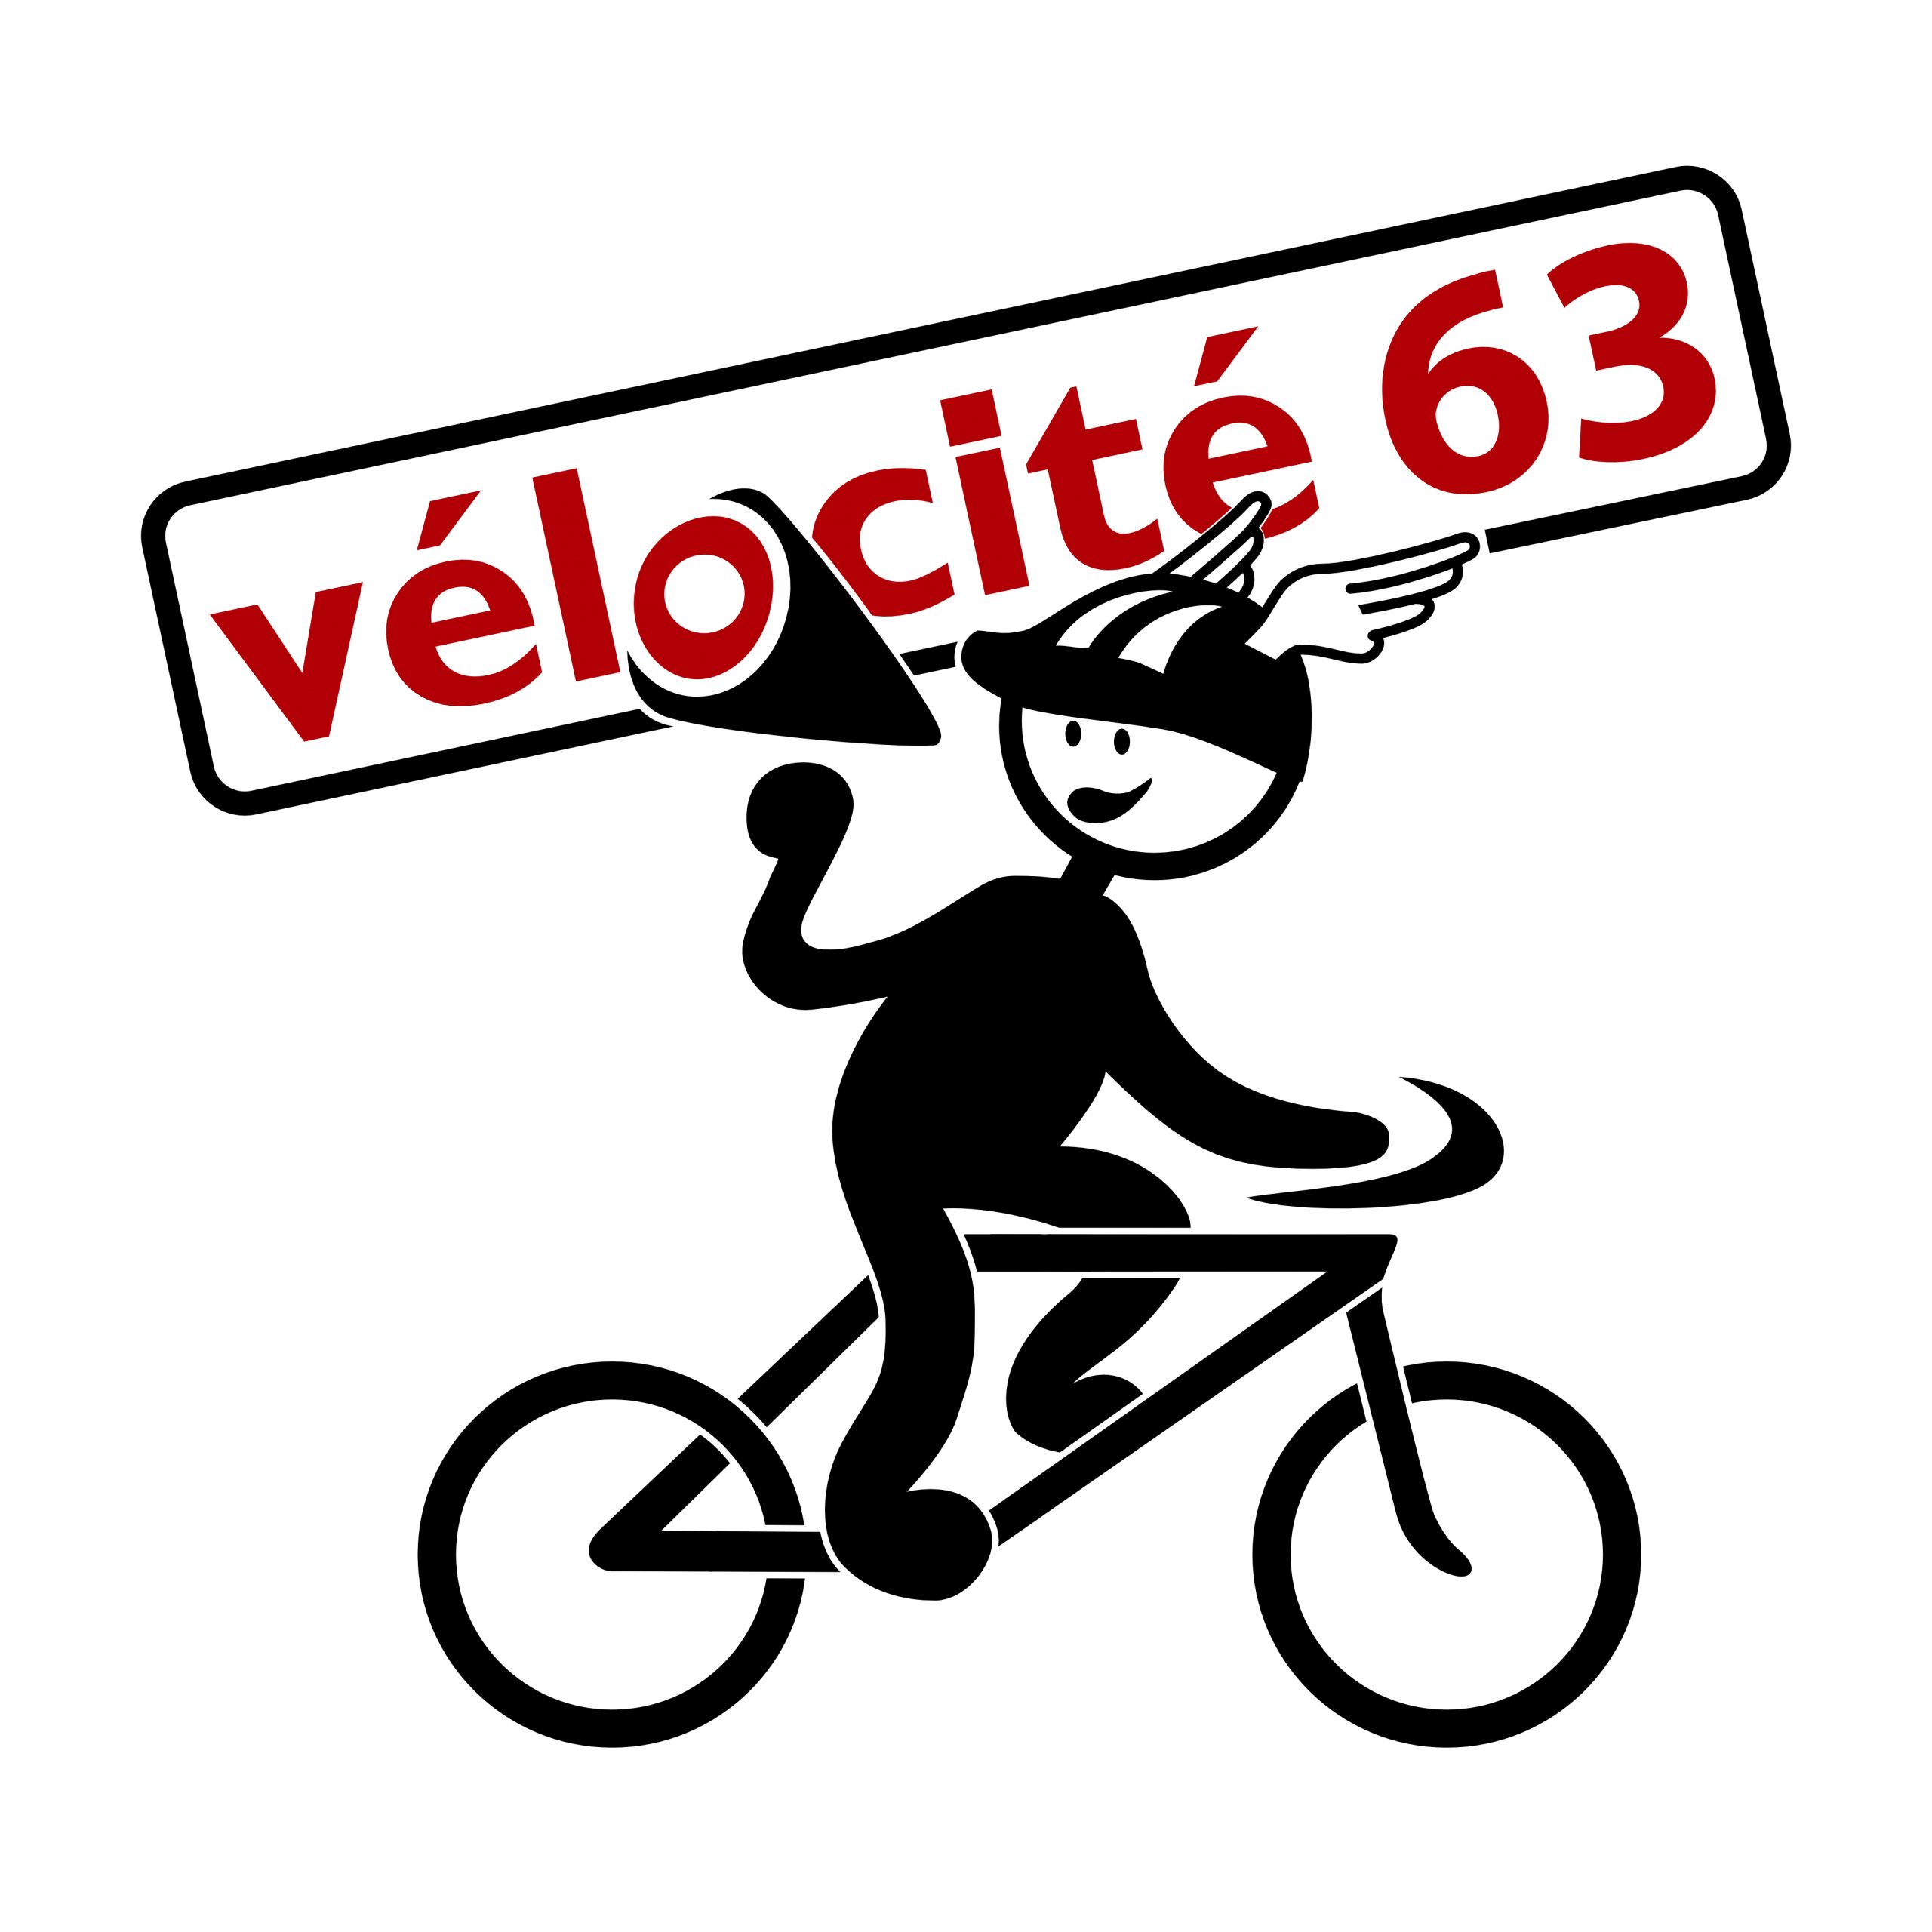 logo-velocite-63.jpg